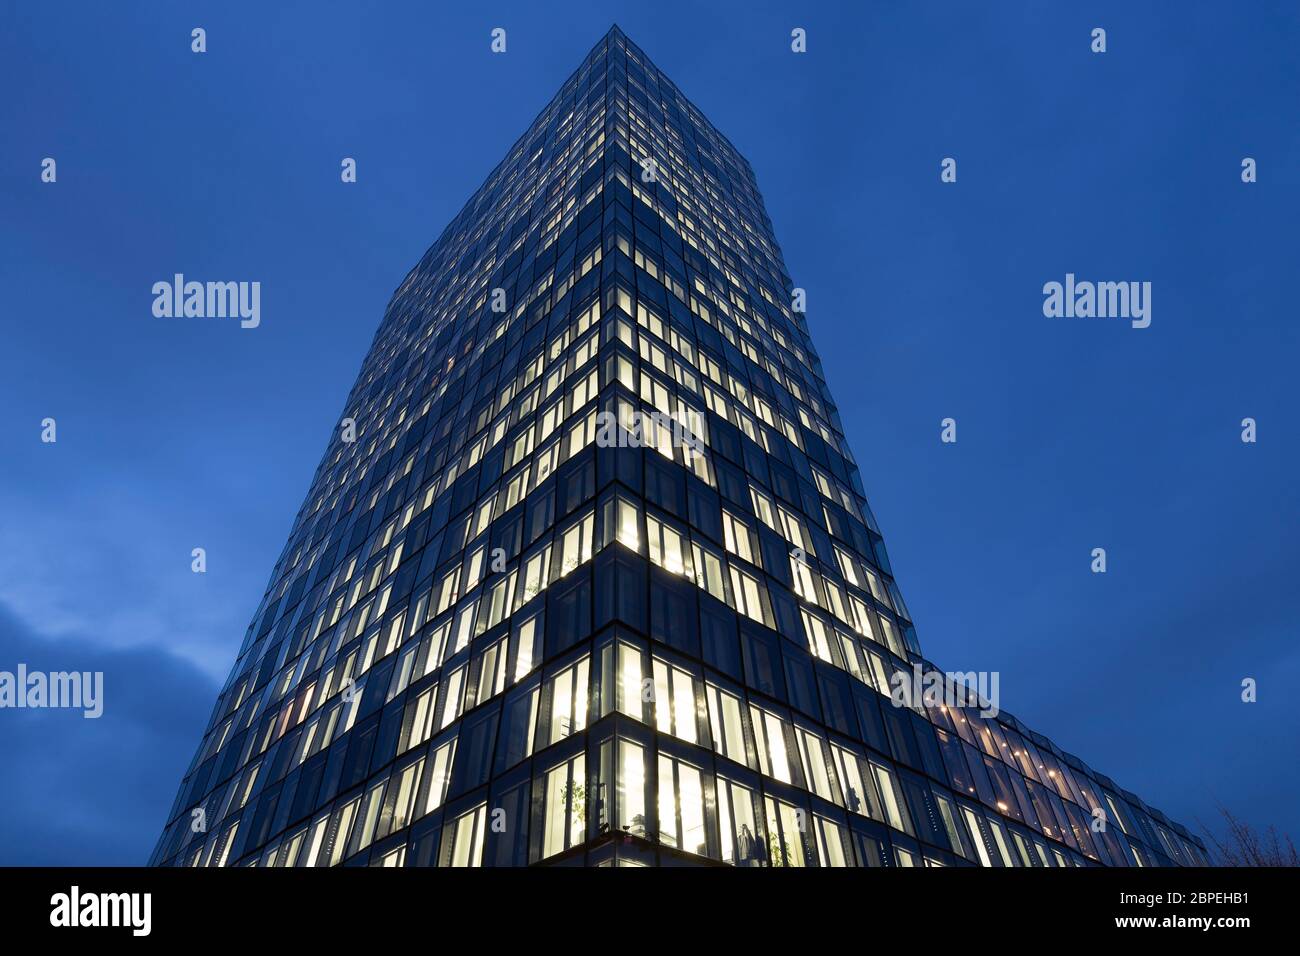 Modernes Bürogebäude in München, Deutschland Stock Photo